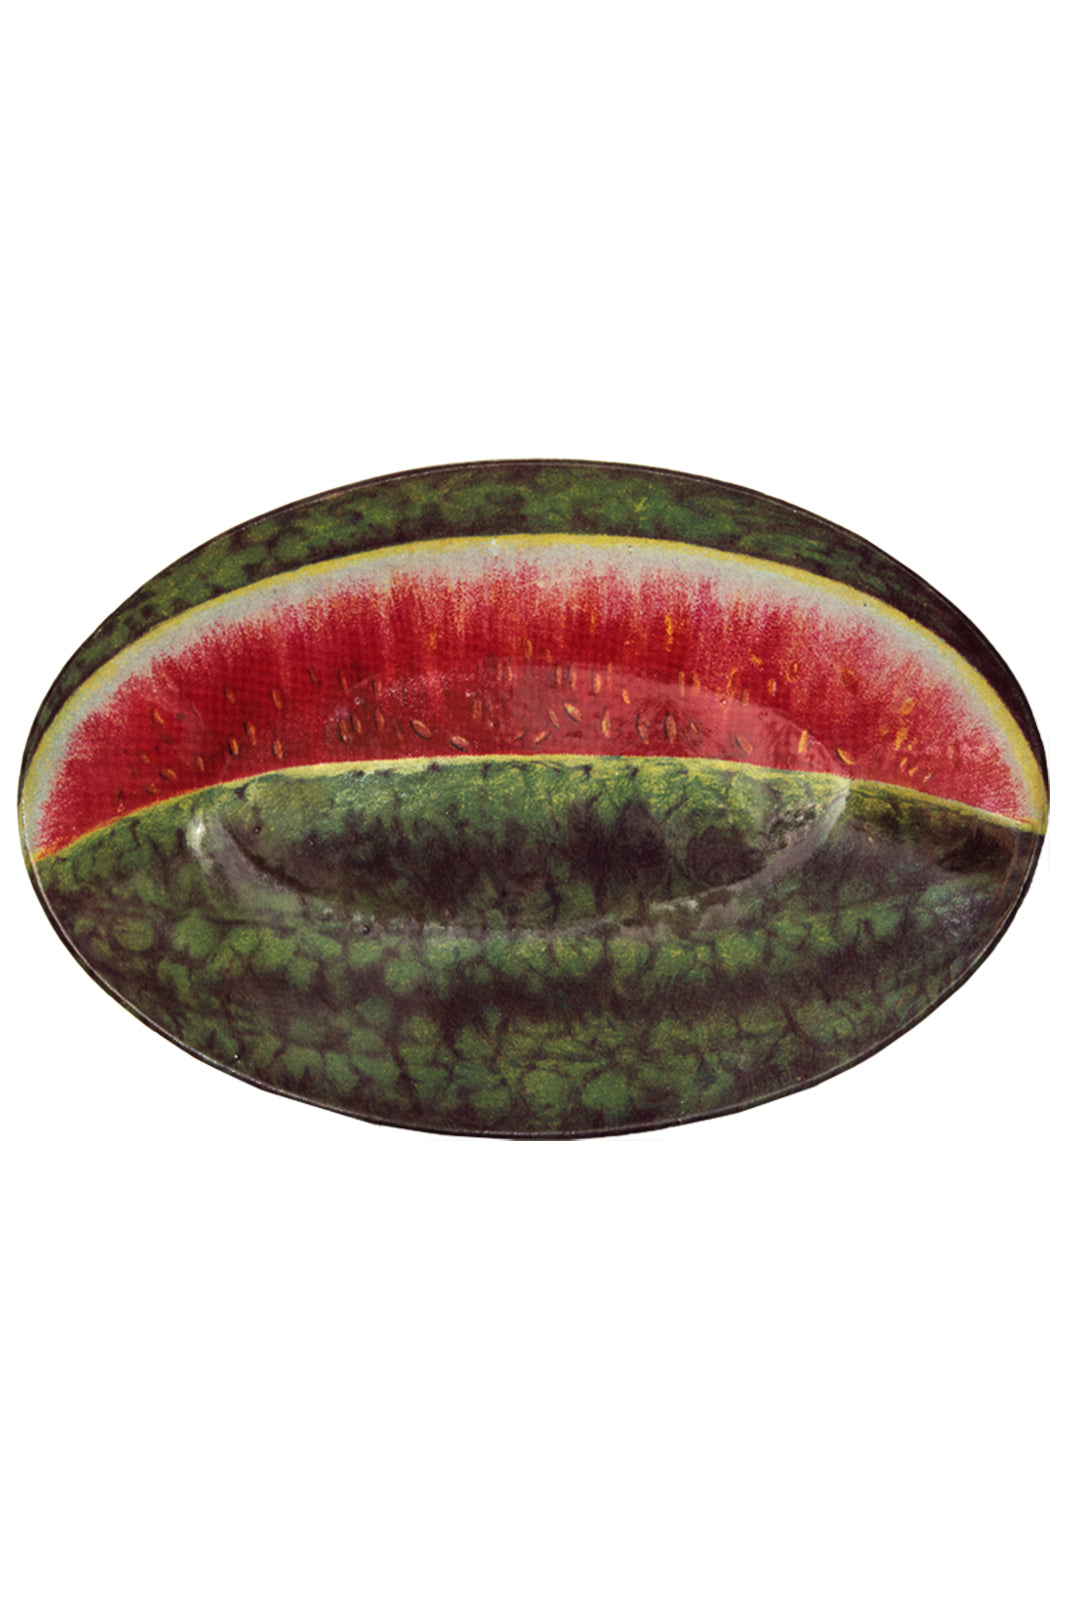 John Derian Watermelon Platter